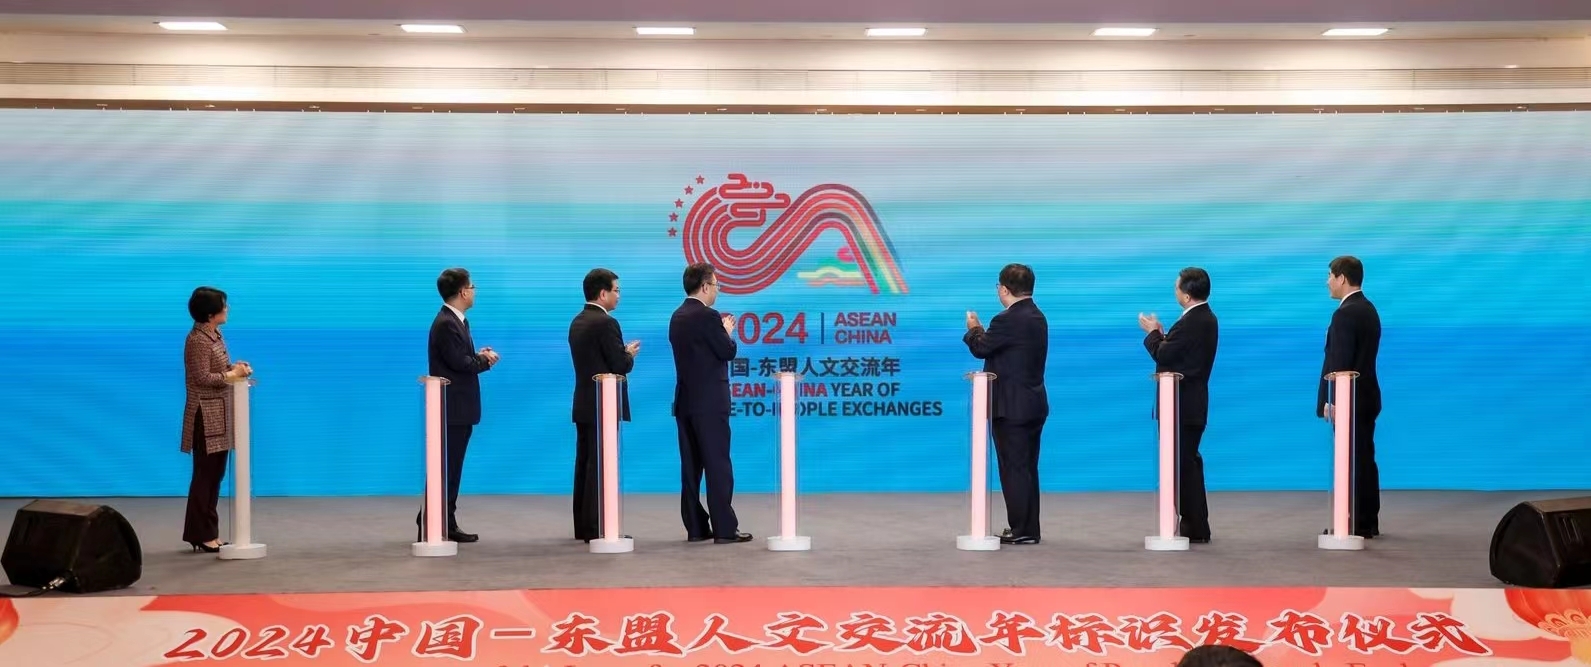 2024年中国—东盟人文交流年标识正式发布。